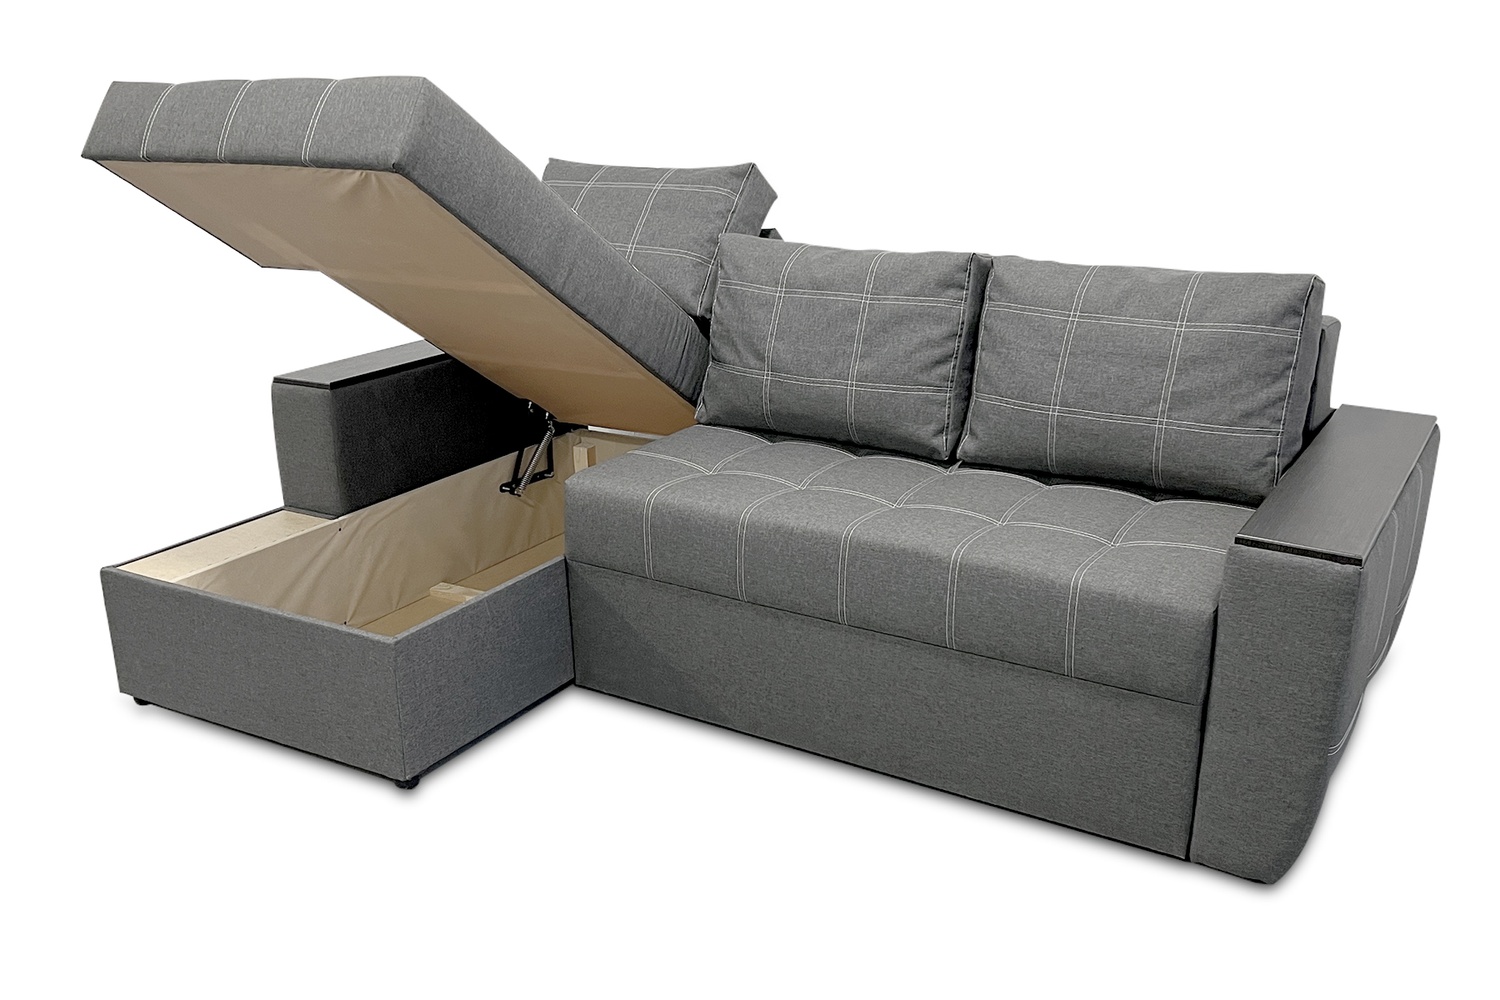 Кутовий диван Наполі (сірий, 240х150 см) IMI knpl-sn-8 фото